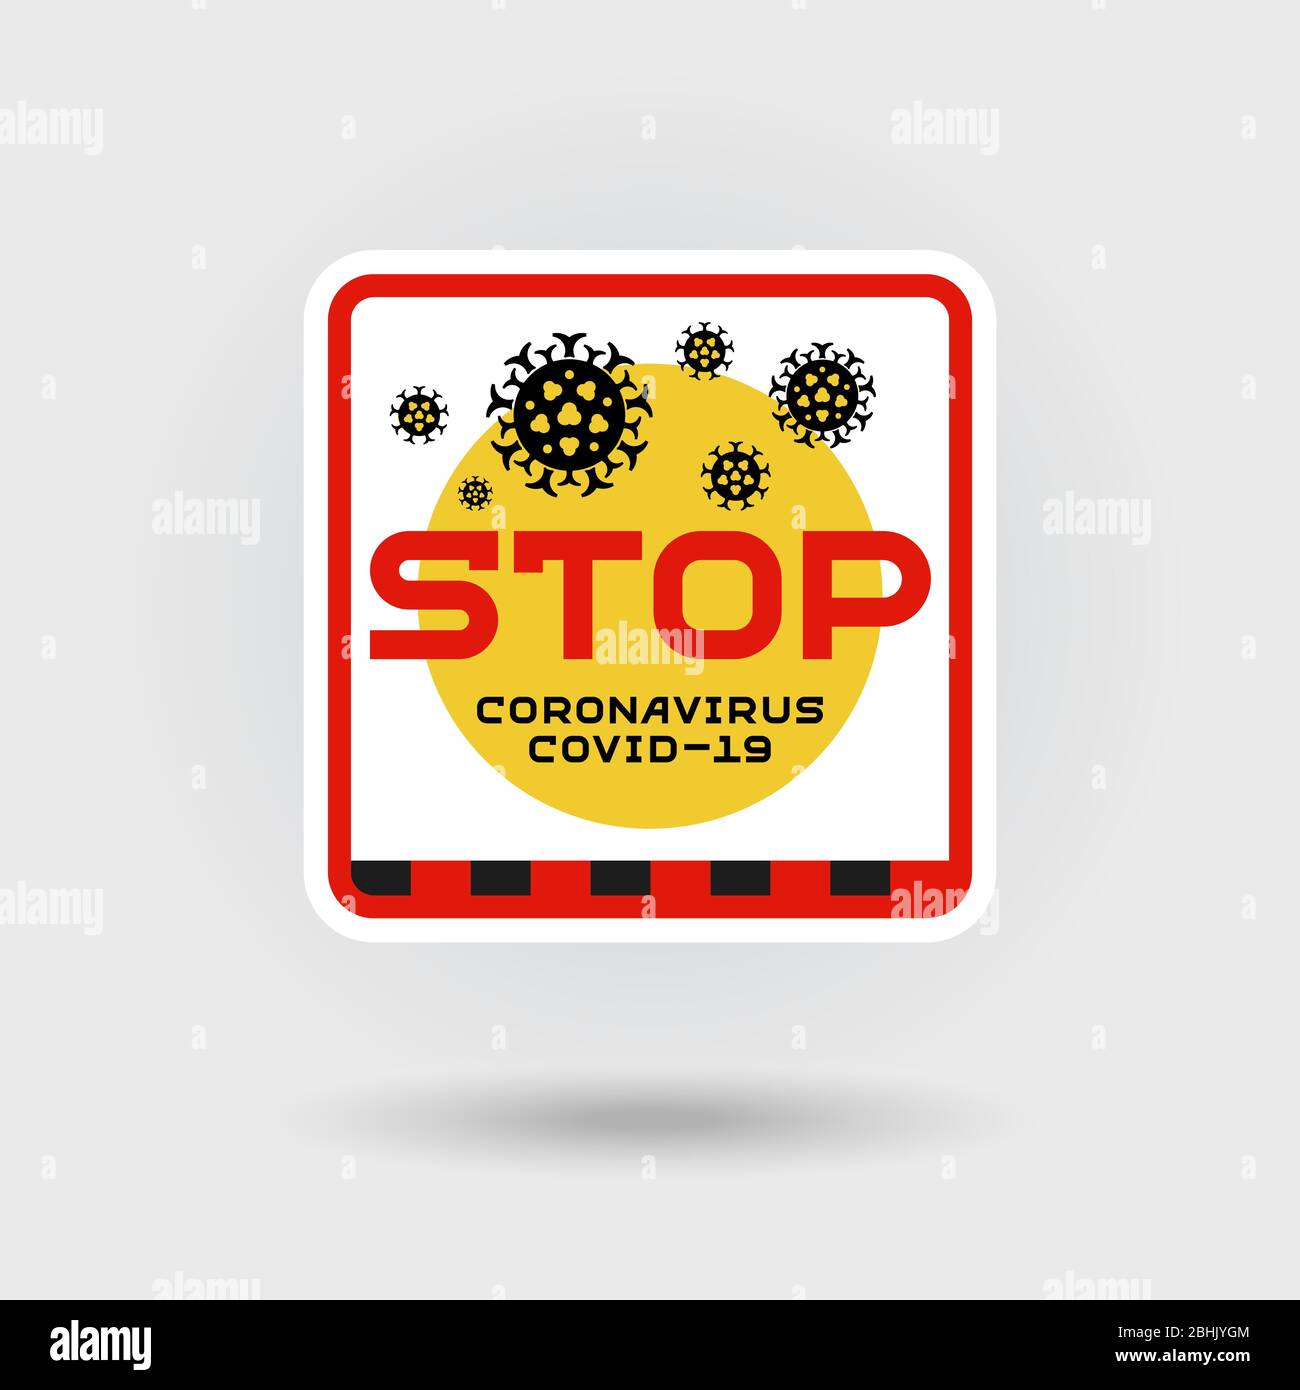 COVID-19 segnale di avvertenza per coronavirus. Include un'icona stilizzata di infezione da virus. Il disegno contiene l'iscrizione ‘Stop‘. Design a forma quadrata. Illustrazione Vettoriale